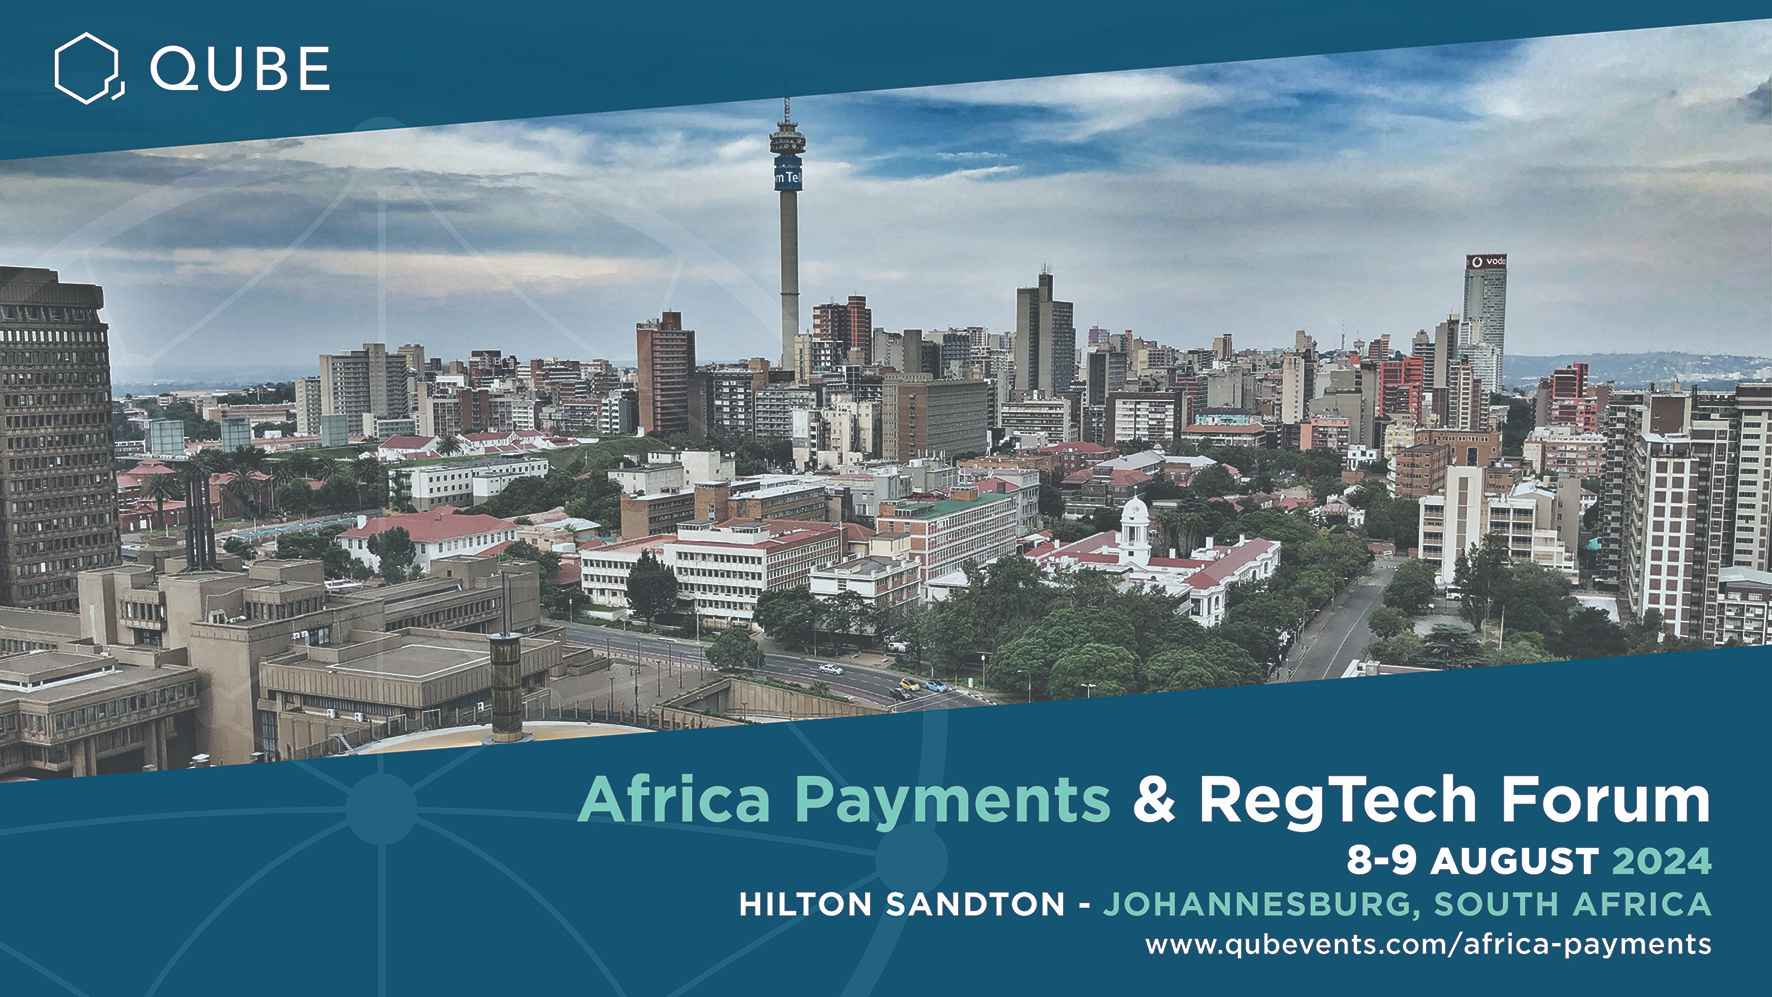 Africa Payments & RegTech Forum, Hilton Sandton - Johannesburg, South Africa,Gauteng,South Africa